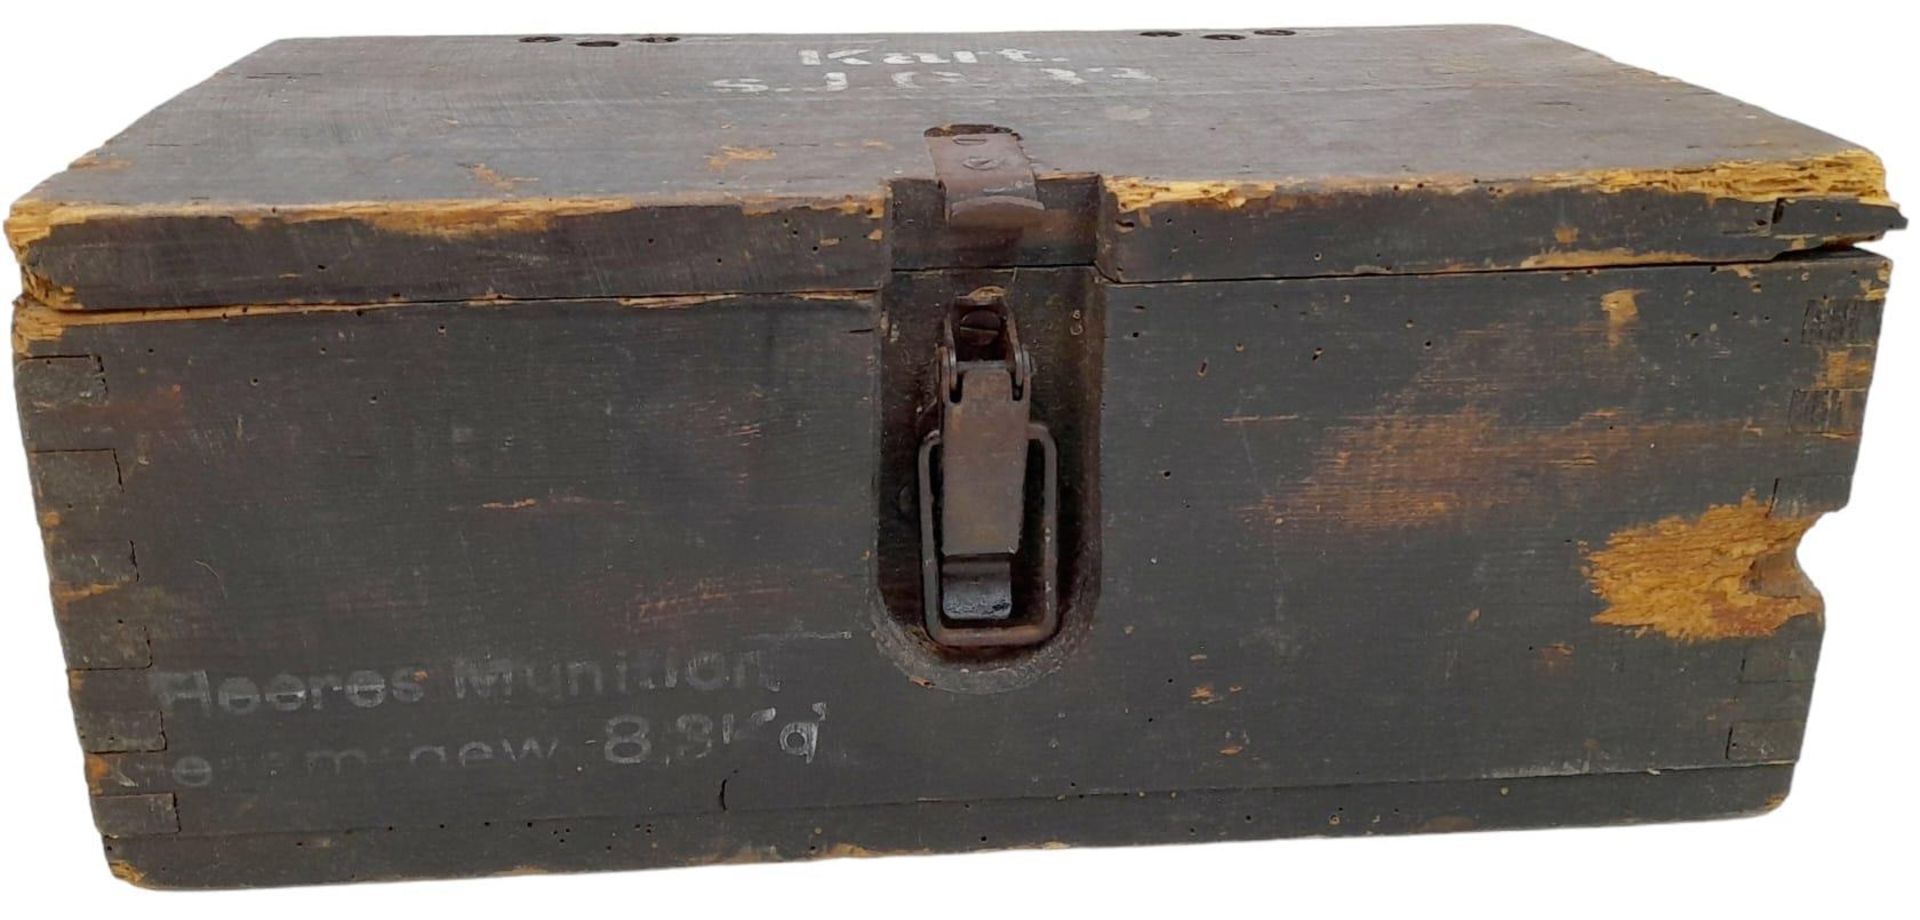 WW2 German 15cm Sig 33 Cartridge Box with original labels, stencils, and internals. - Bild 5 aus 15